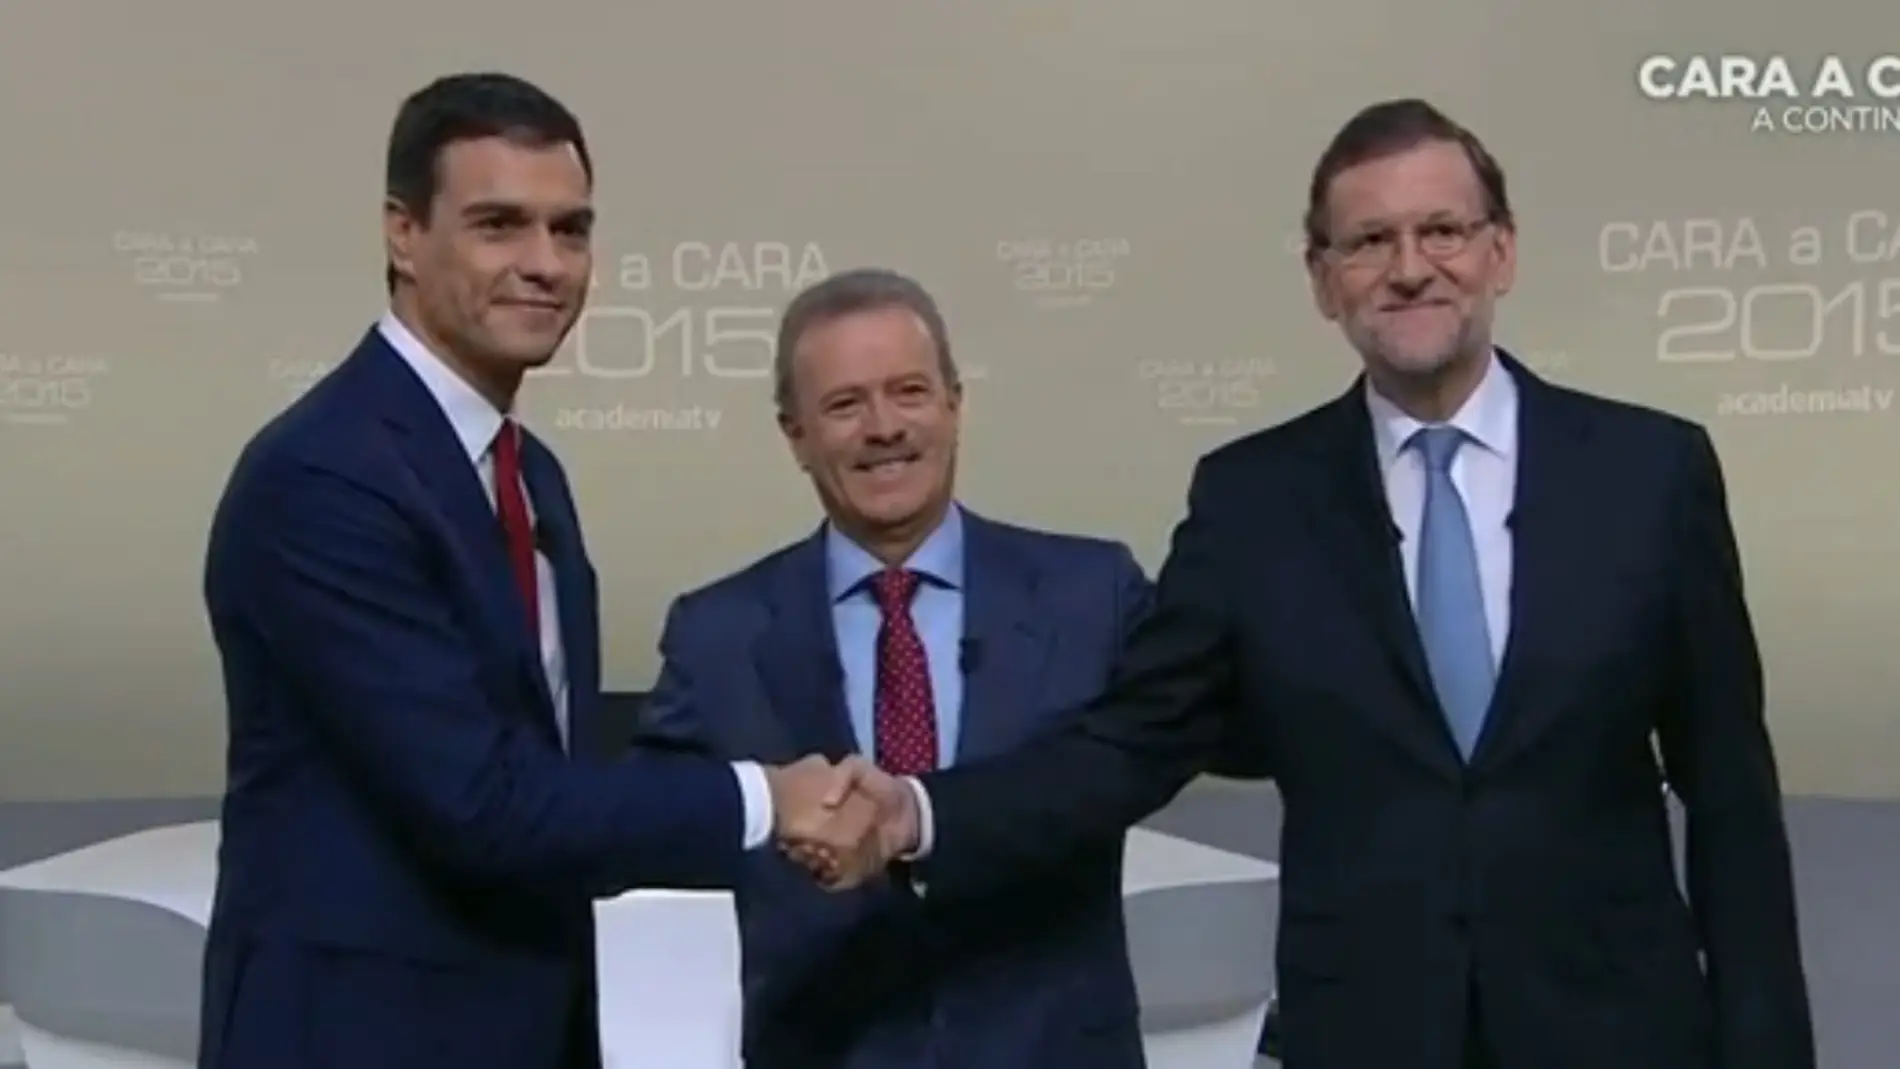 Mariano Rajoy y Pedro Sánchez se saludan antes del 'Cara a cara'